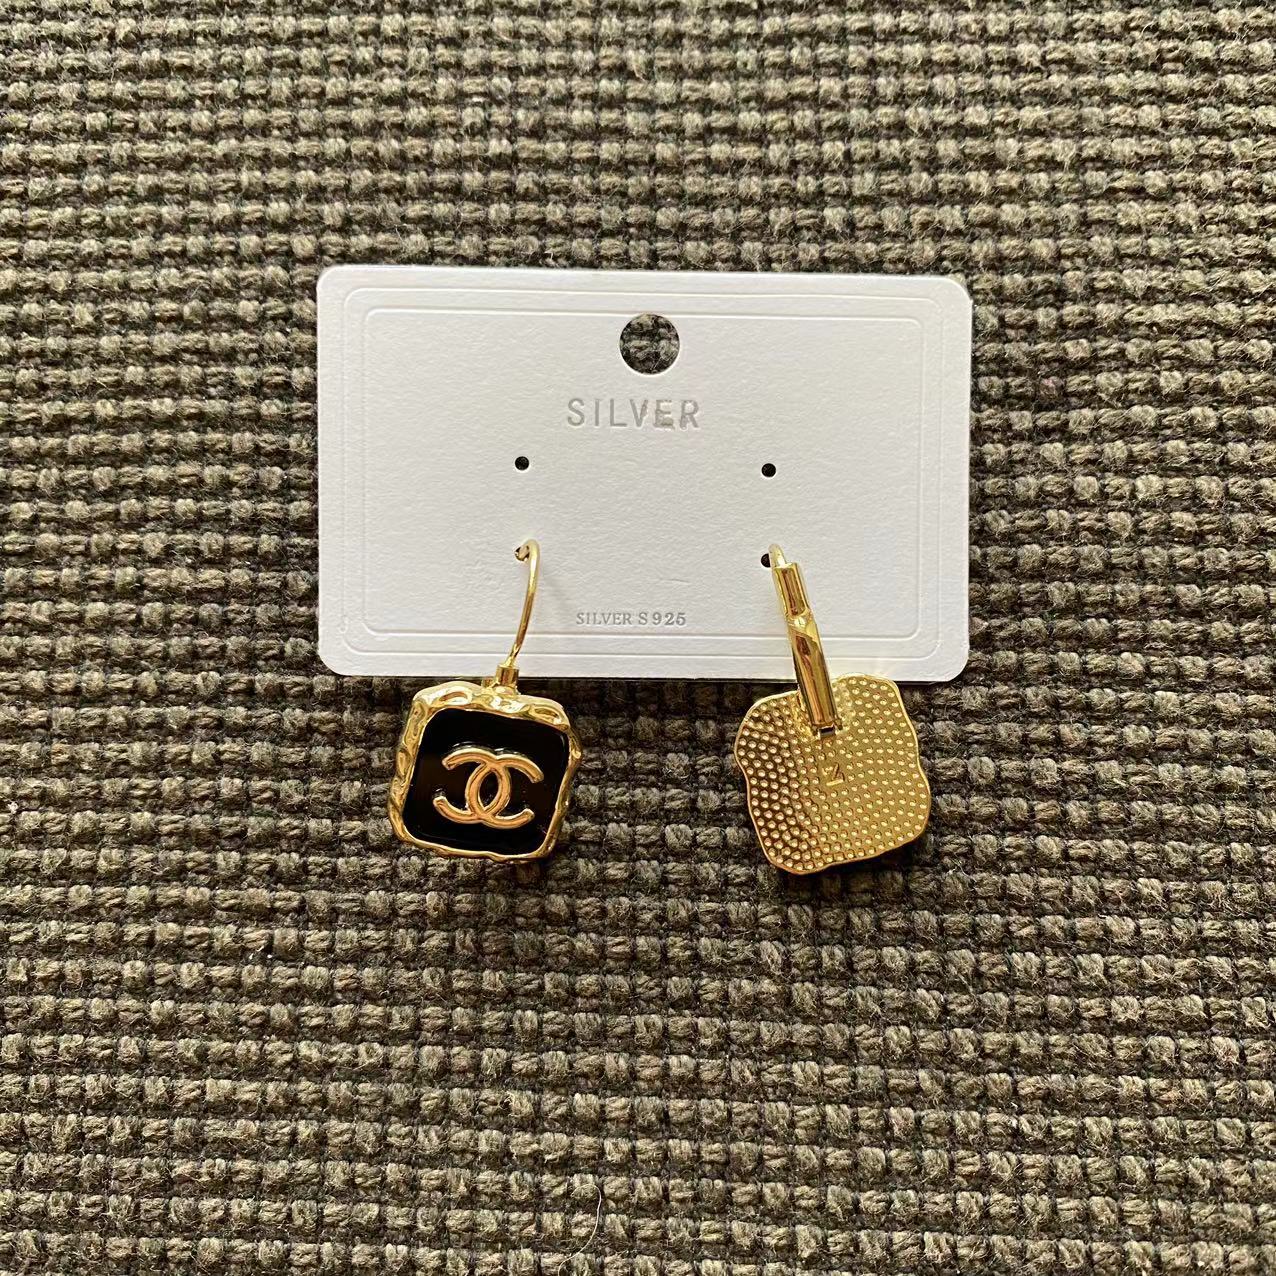 Big sale! New Chanel earrings